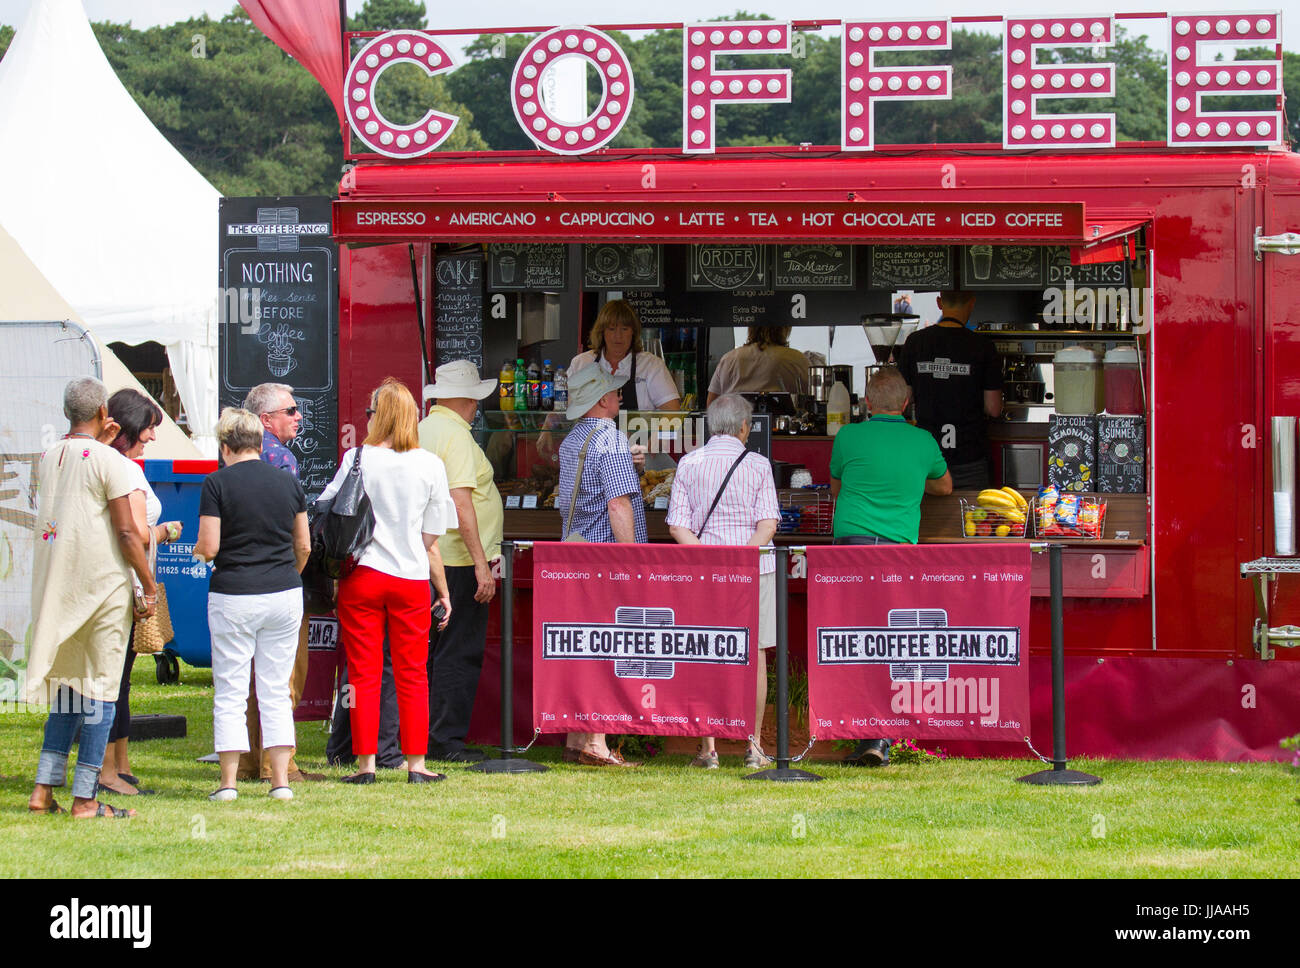 The Coffee Bean Co. Lebensmitteltransporter, Lastwagen und Stände in Knutsford, Keshire, Großbritannien. Juli 2017. Auf der Tatton Park Flower Show, die heute eröffnet wurde, um Kaffee zu trinken, erwartet Sie eine fünftägige botanische Extravaganz. Stockfoto